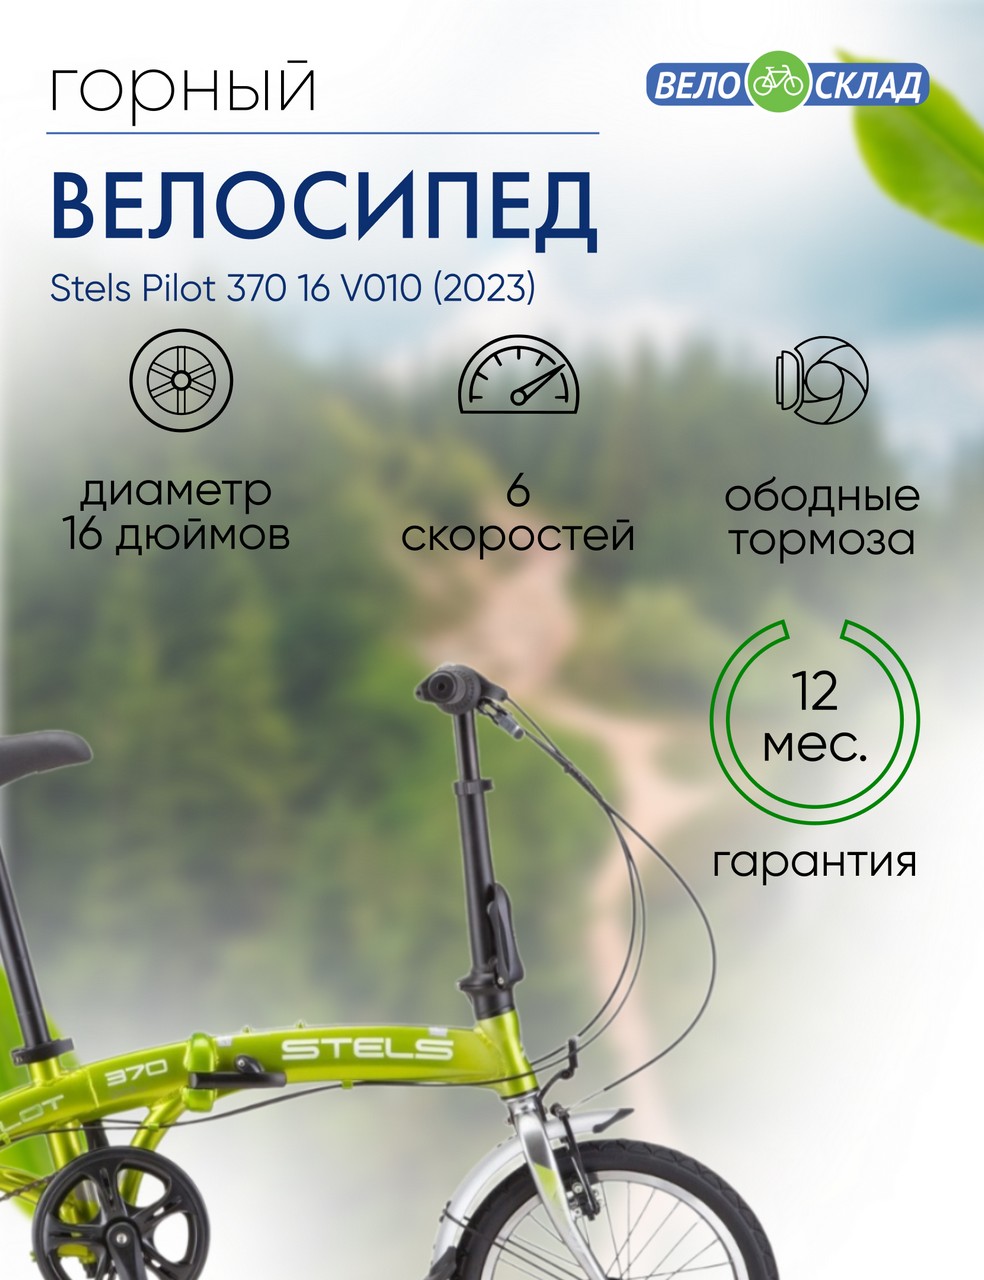 Складной велосипед Stels Pilot 370 16 V010, год 2023, цвет Зеленый